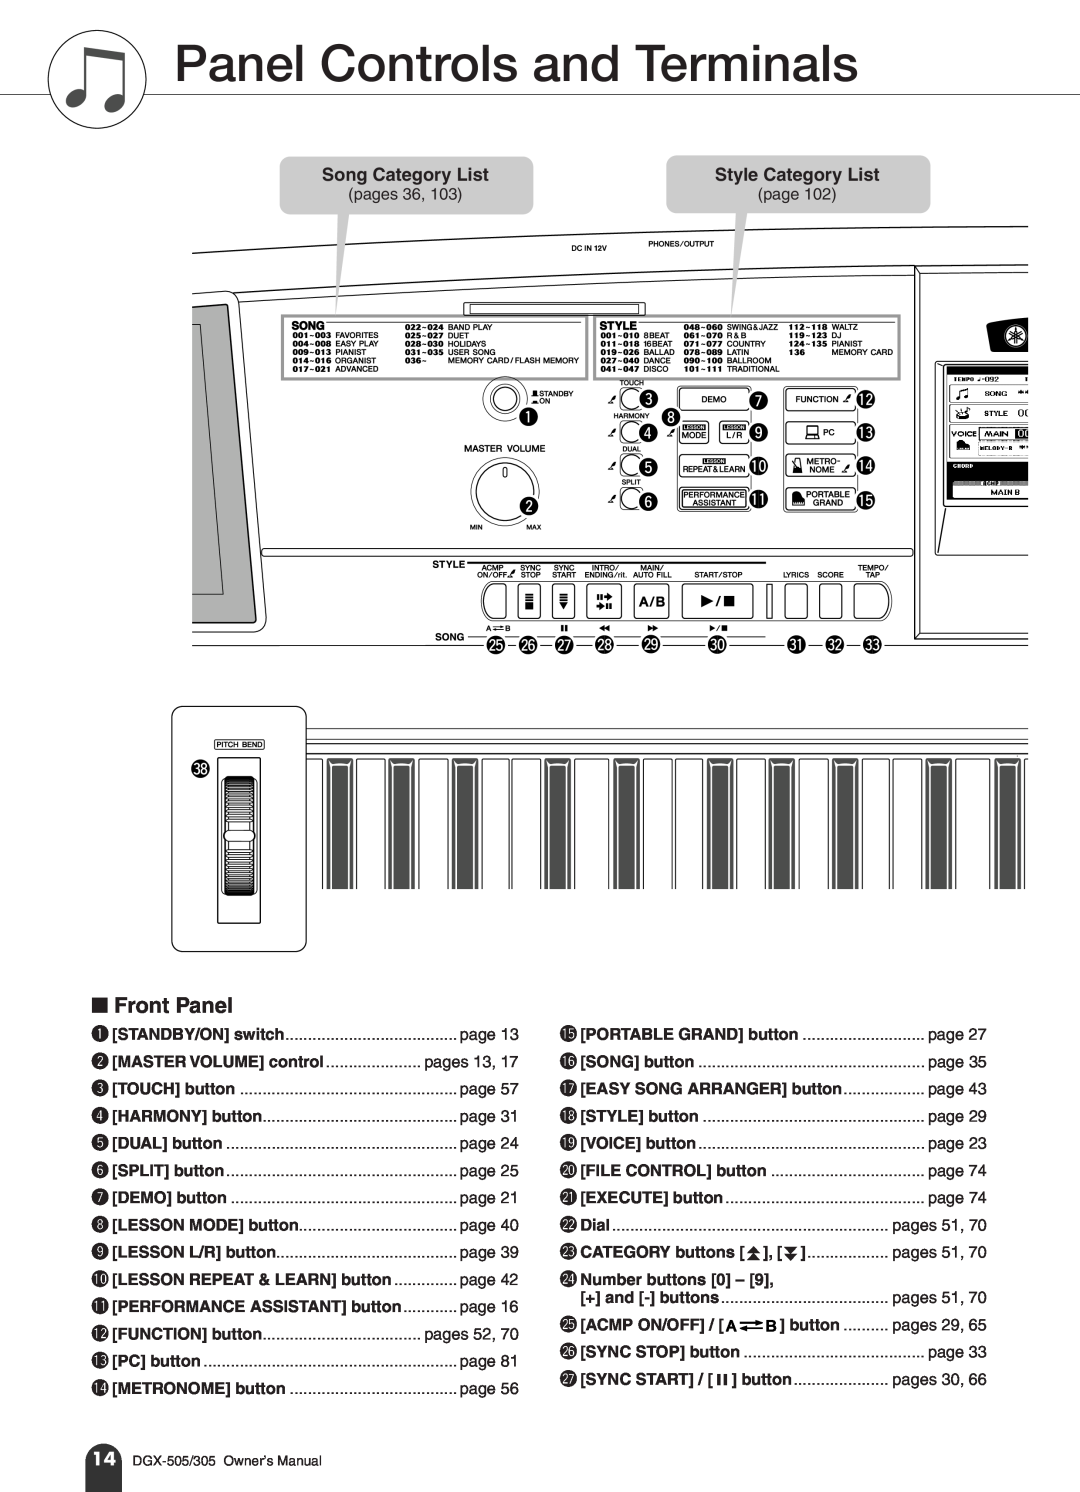 Yamaha DGX-505, DGX-305 manual Panel Controls and Terminals, Front Panel, @5@6 @7 @8 @9, #1 #2 #3 